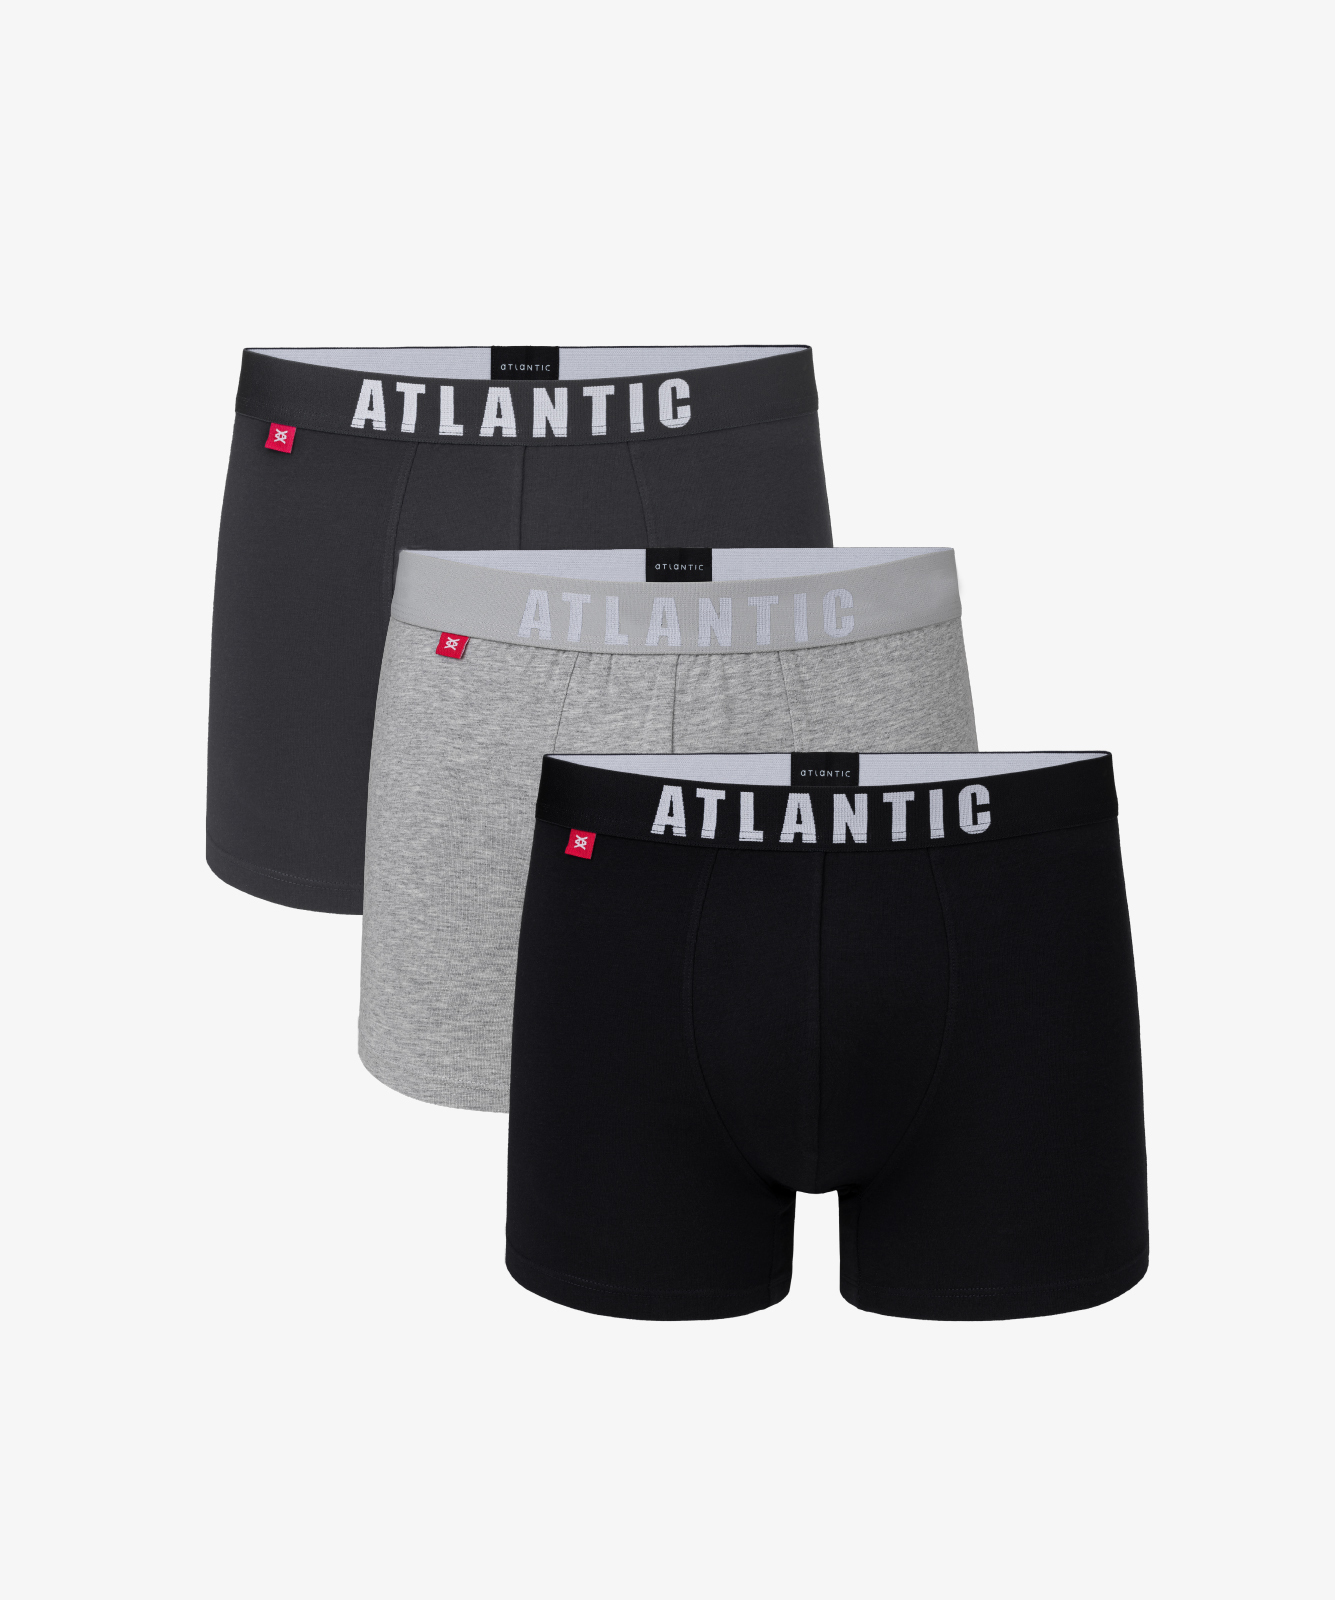 Мужские трусы шорты Atlantic, набор из 3 шт., хлопок, графит + серый меланж + черные, 3MH-011